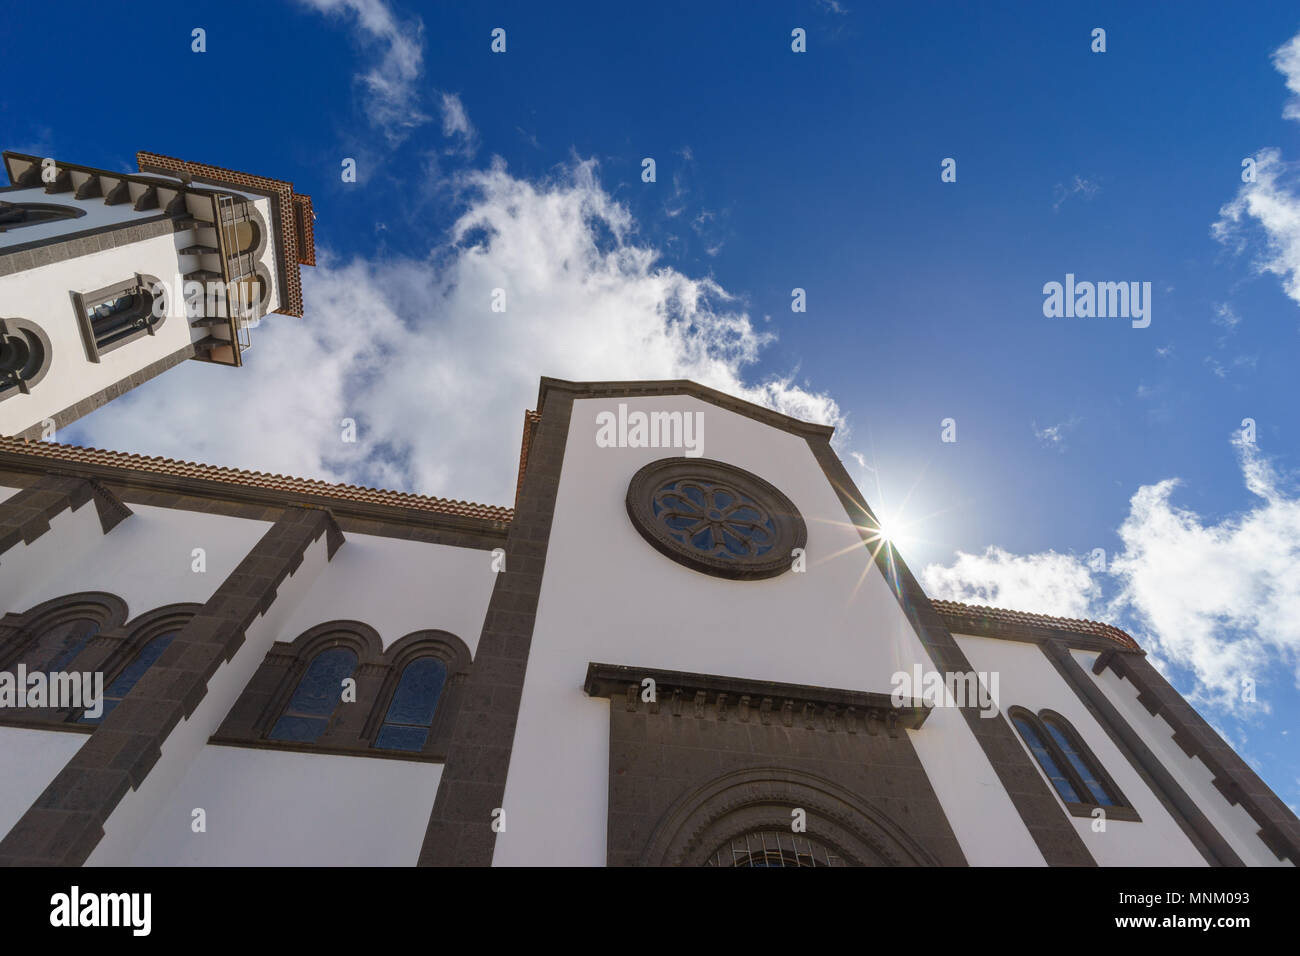 Church of Nuestra Senora de la Candelaria, Moya, Gran Canaria, Spain Stock Photo